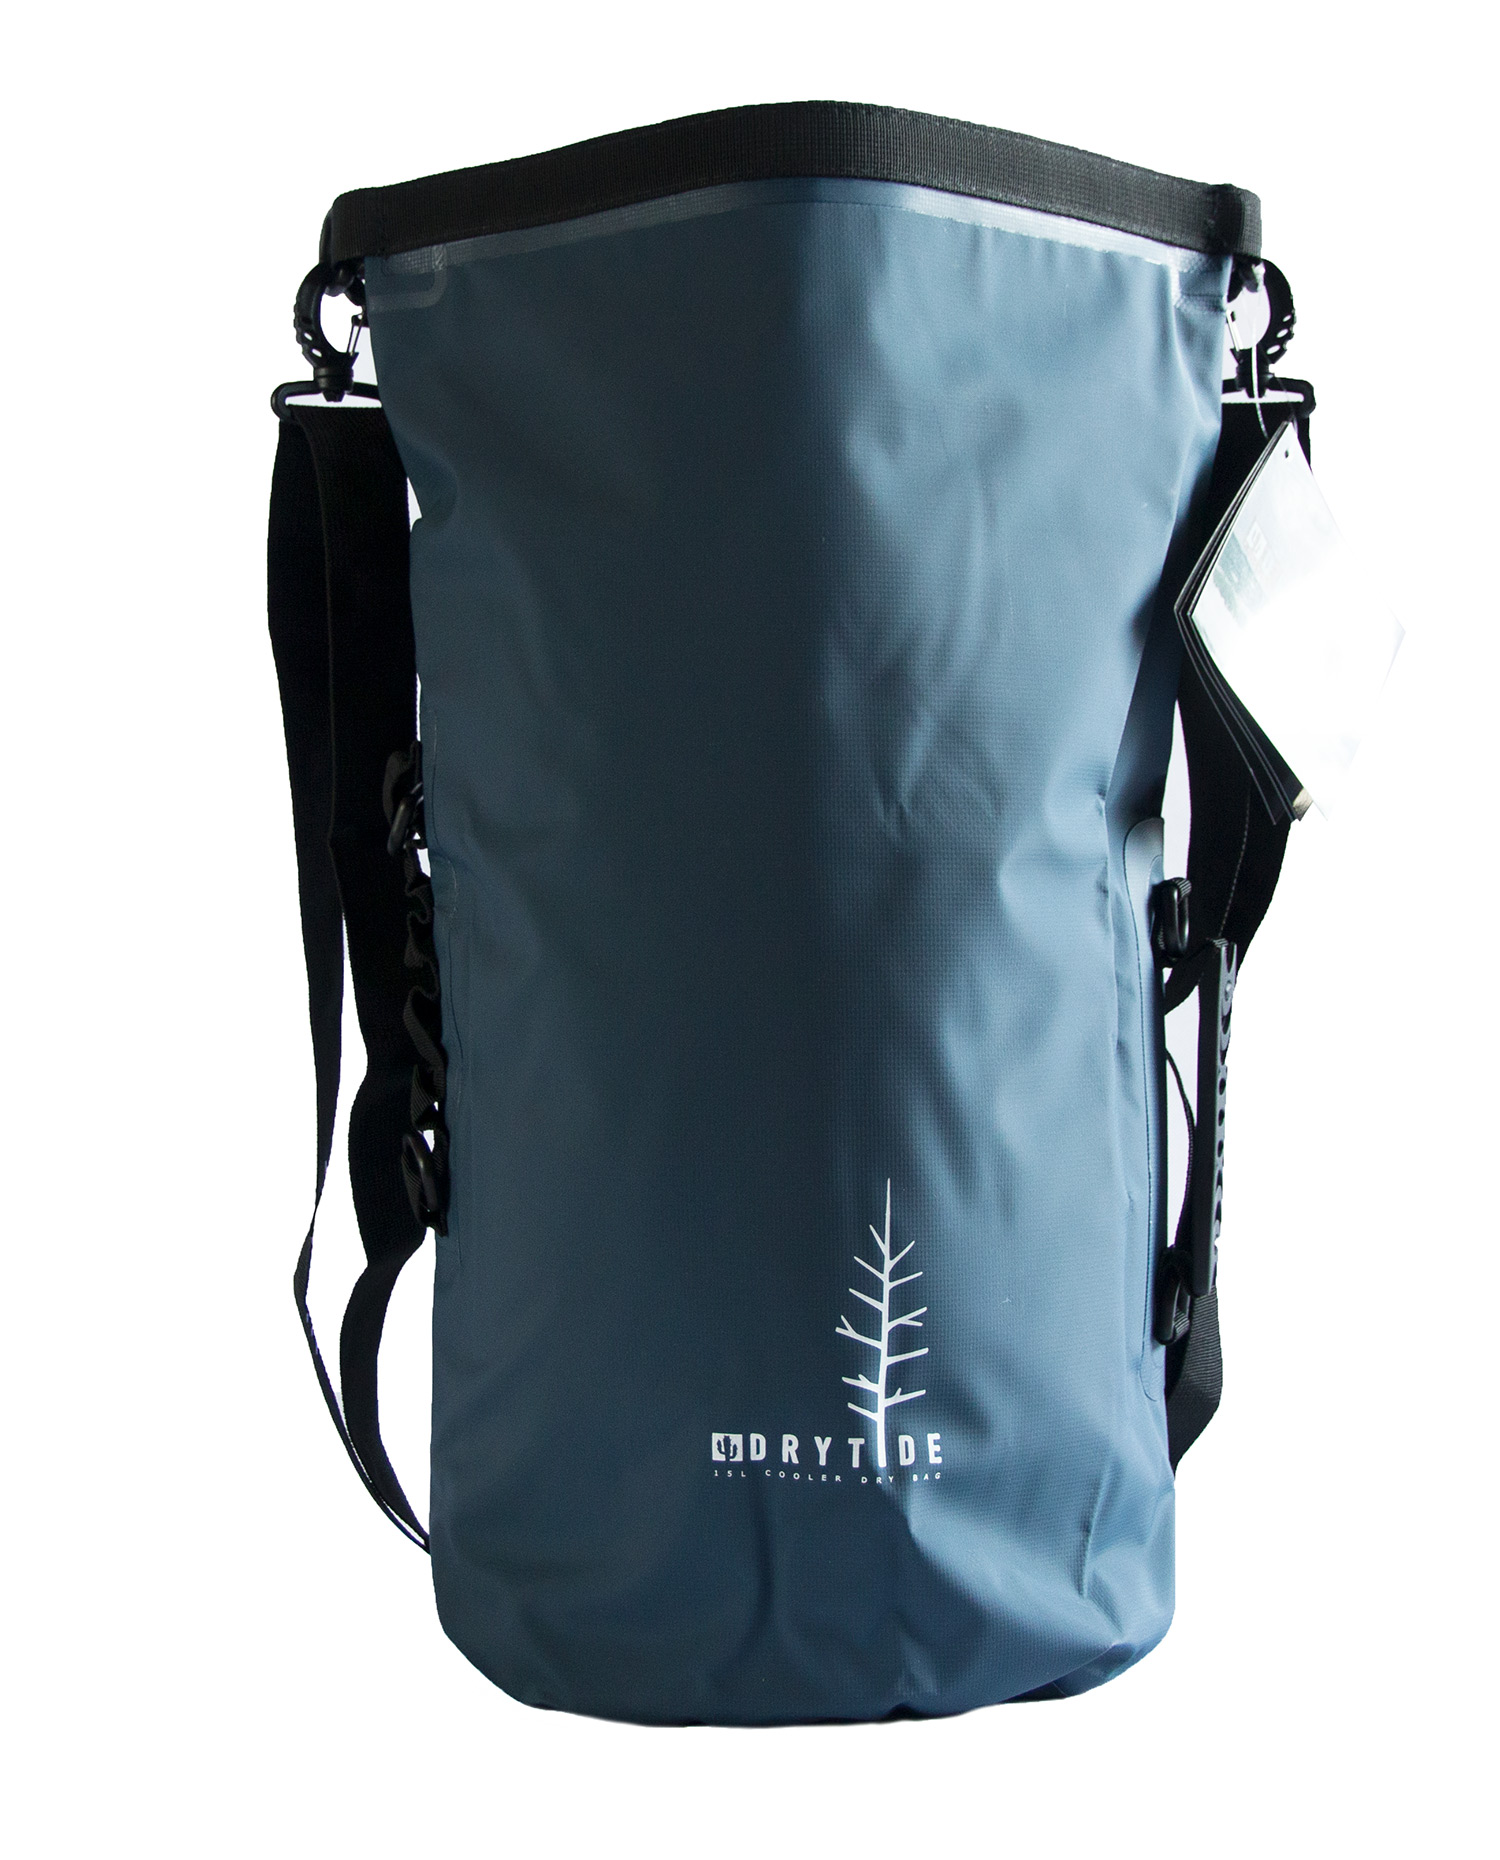 https://drytidegear.com/wp-content/uploads/DryTide-15L-cooler-dry-bag.jpg